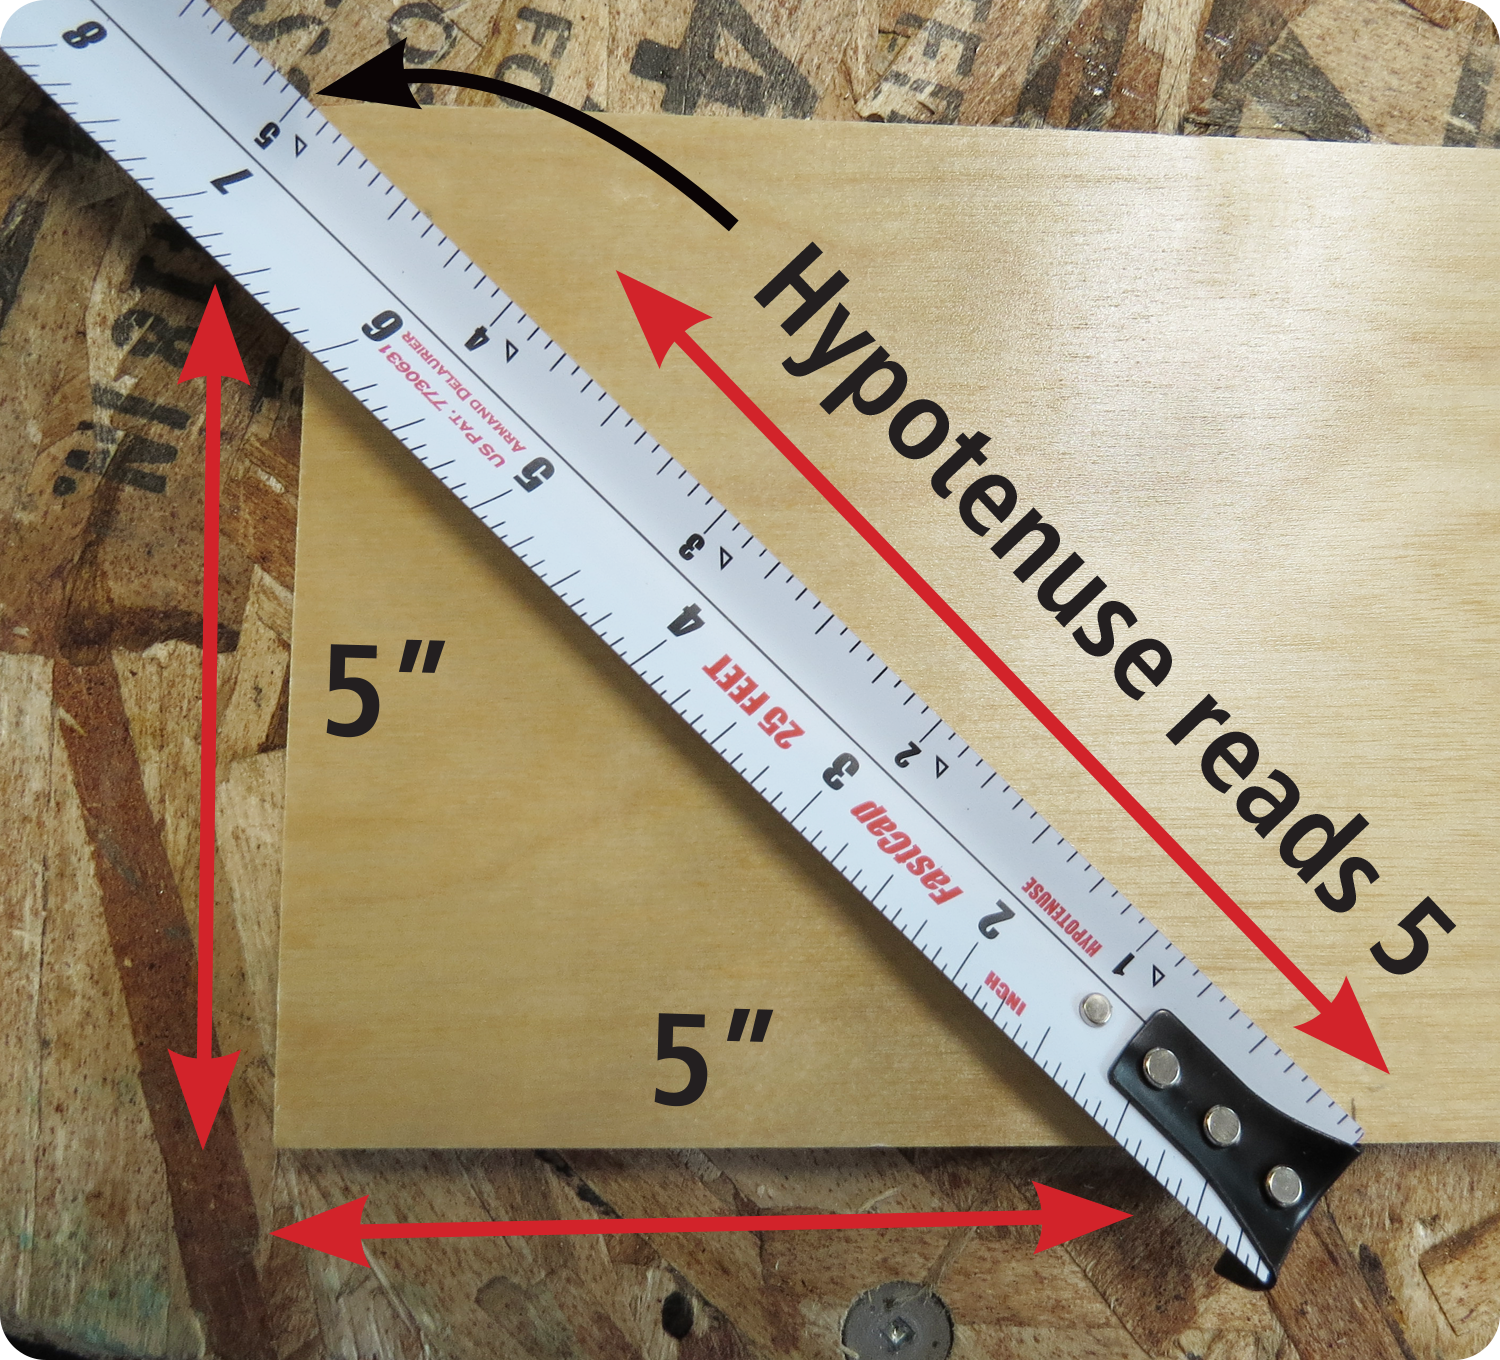 FastCap ProCarpenter Tape Measure Metric-Standard 25′